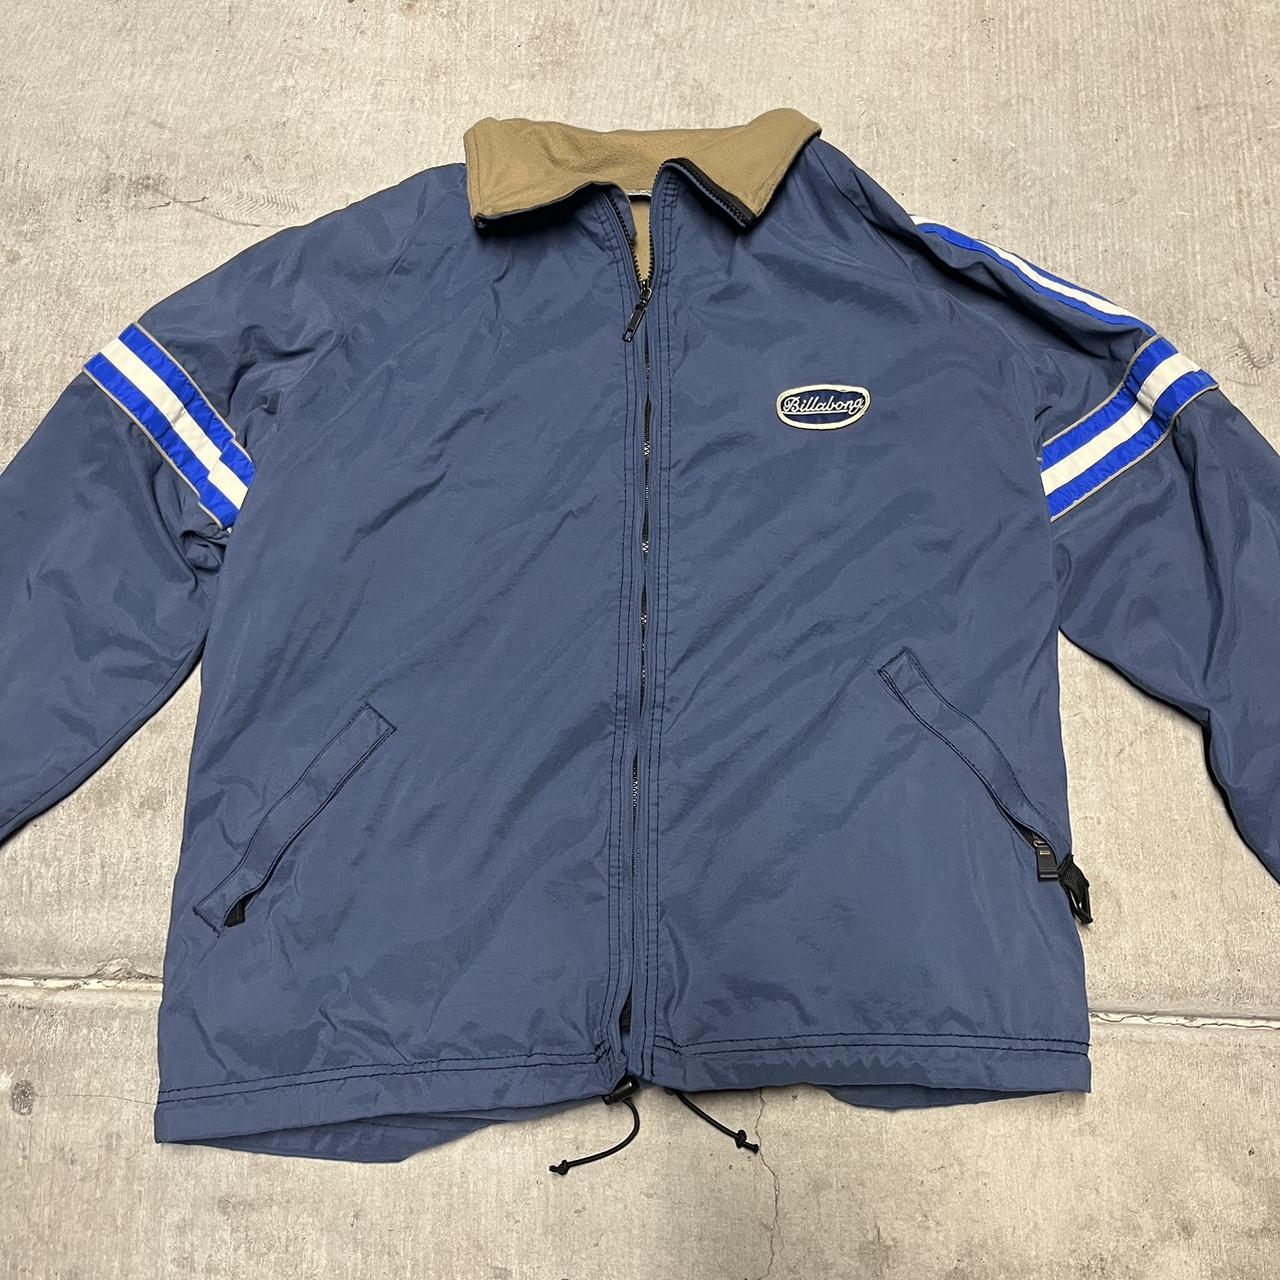 90s Billabong windbreaker type of jacket. blue with... - Depop